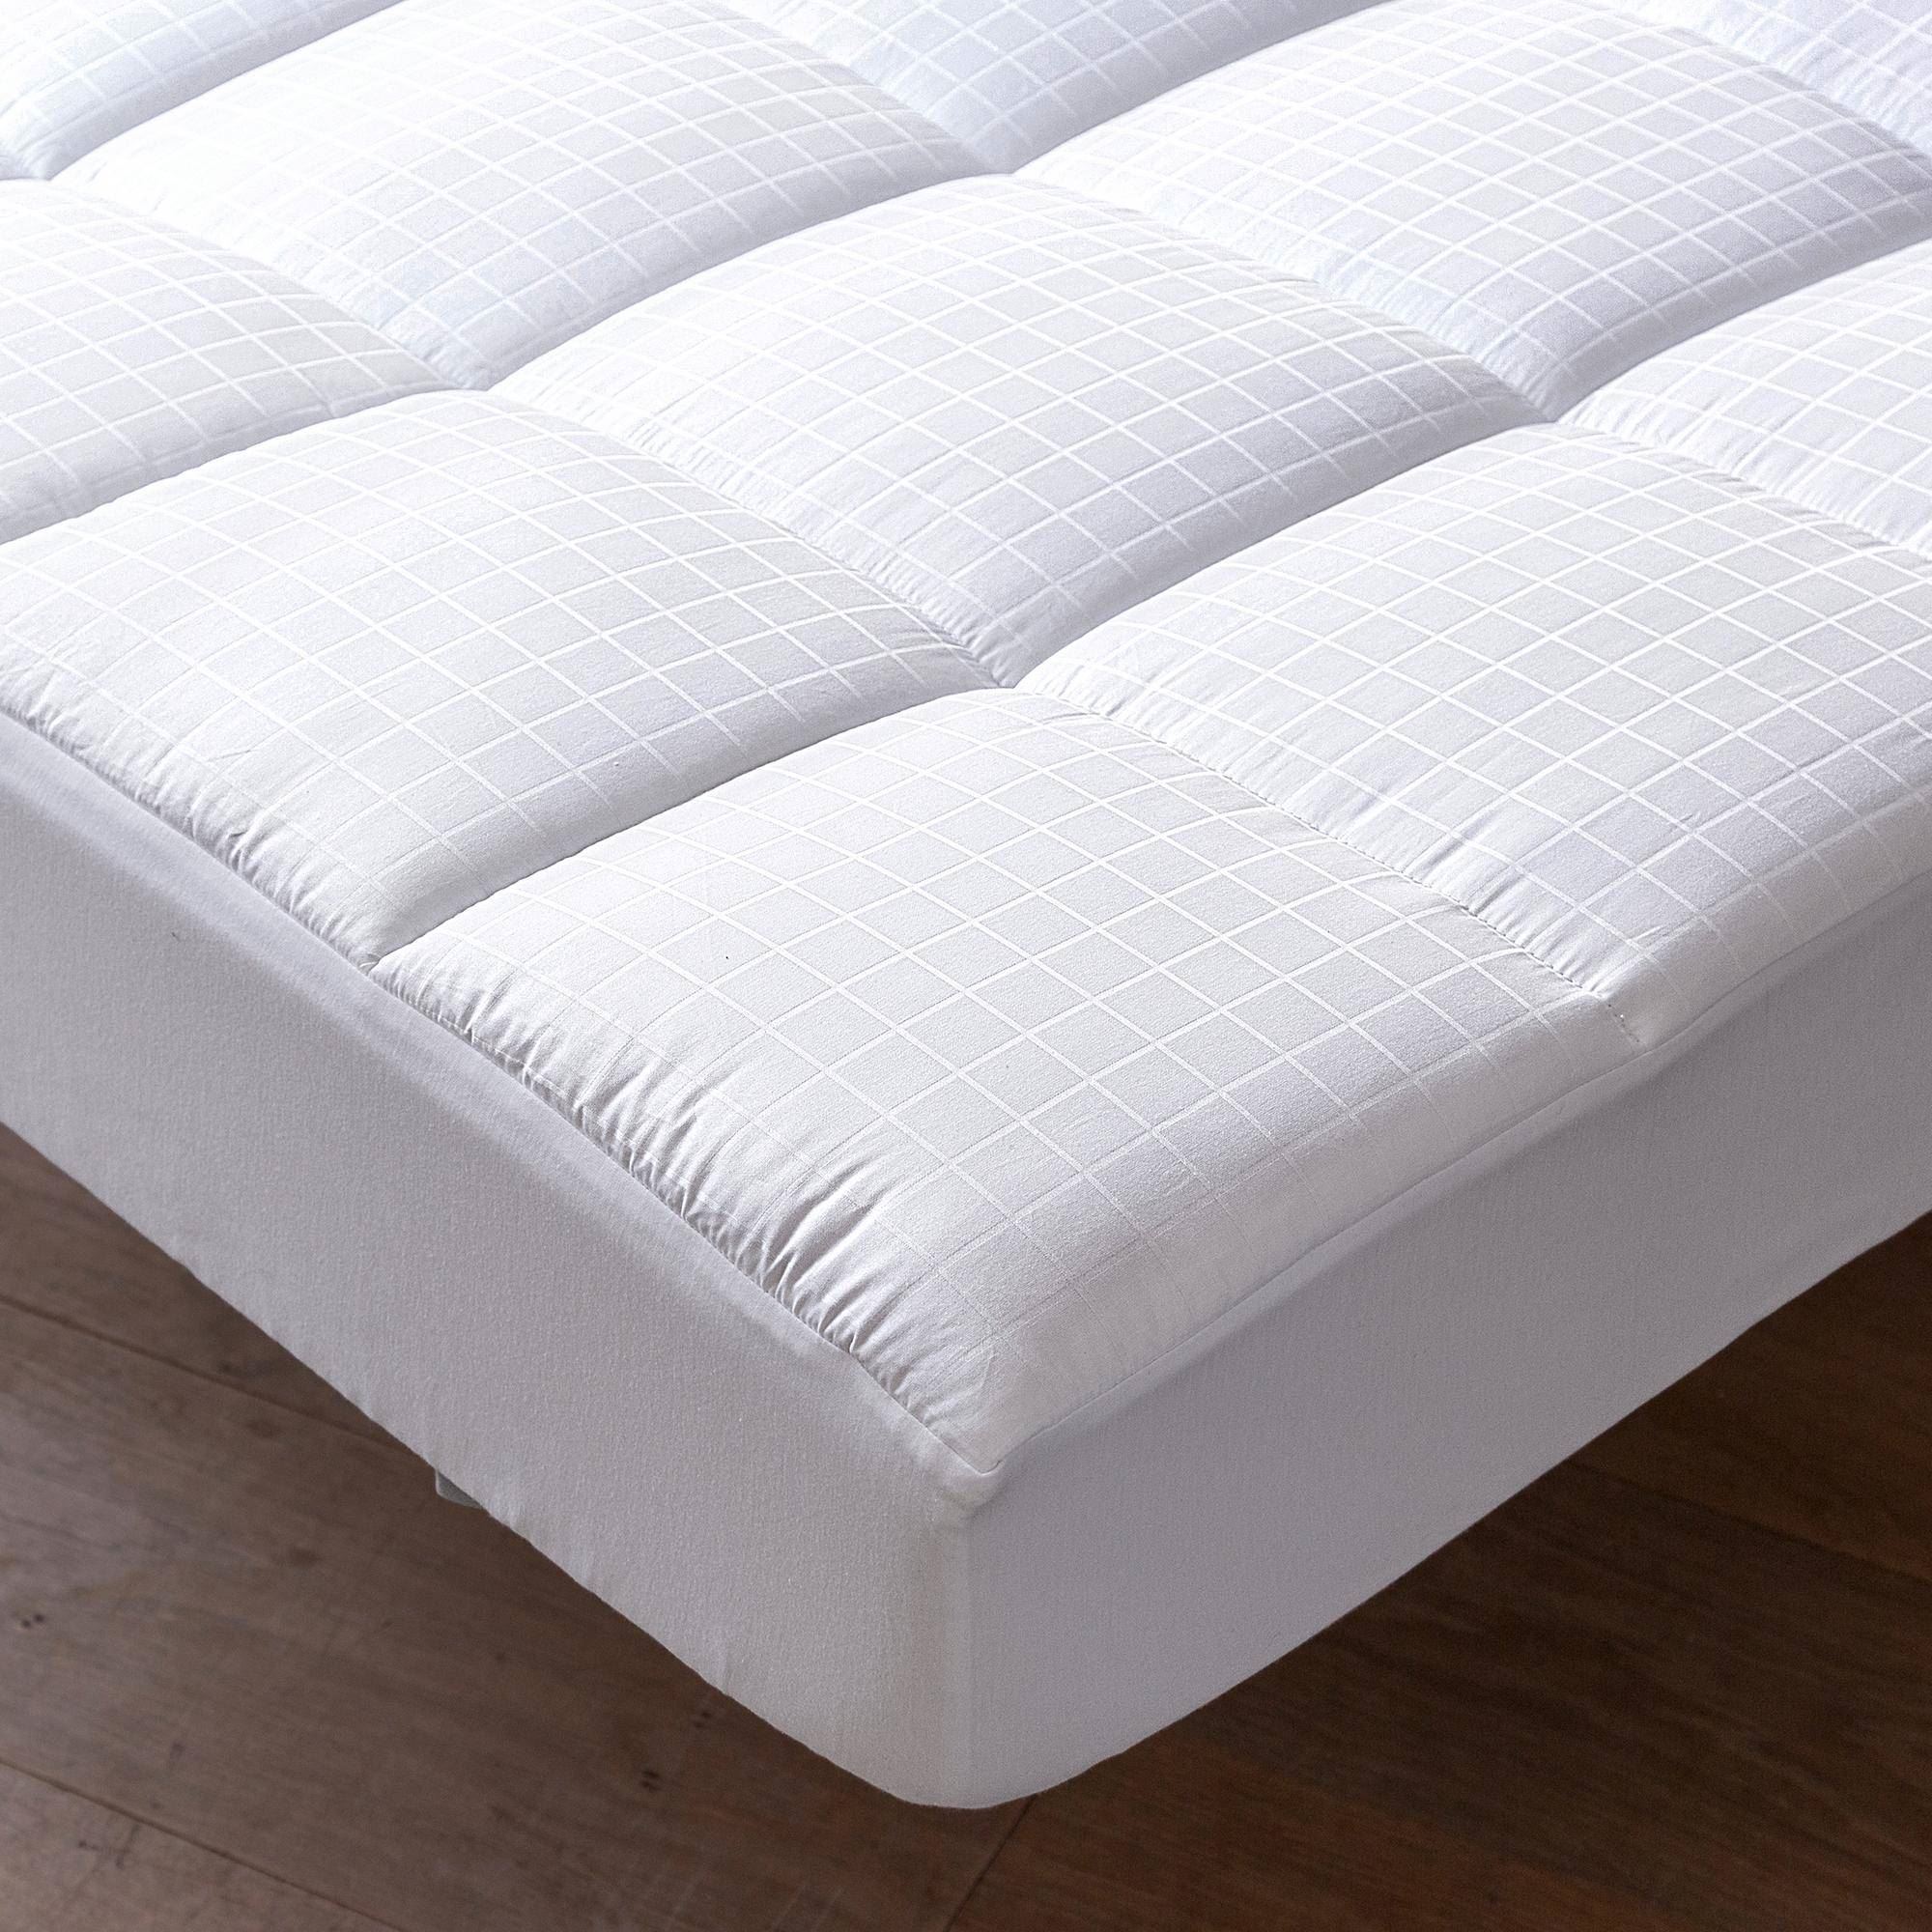 Surmatelas confort 160x200 blanc en coton